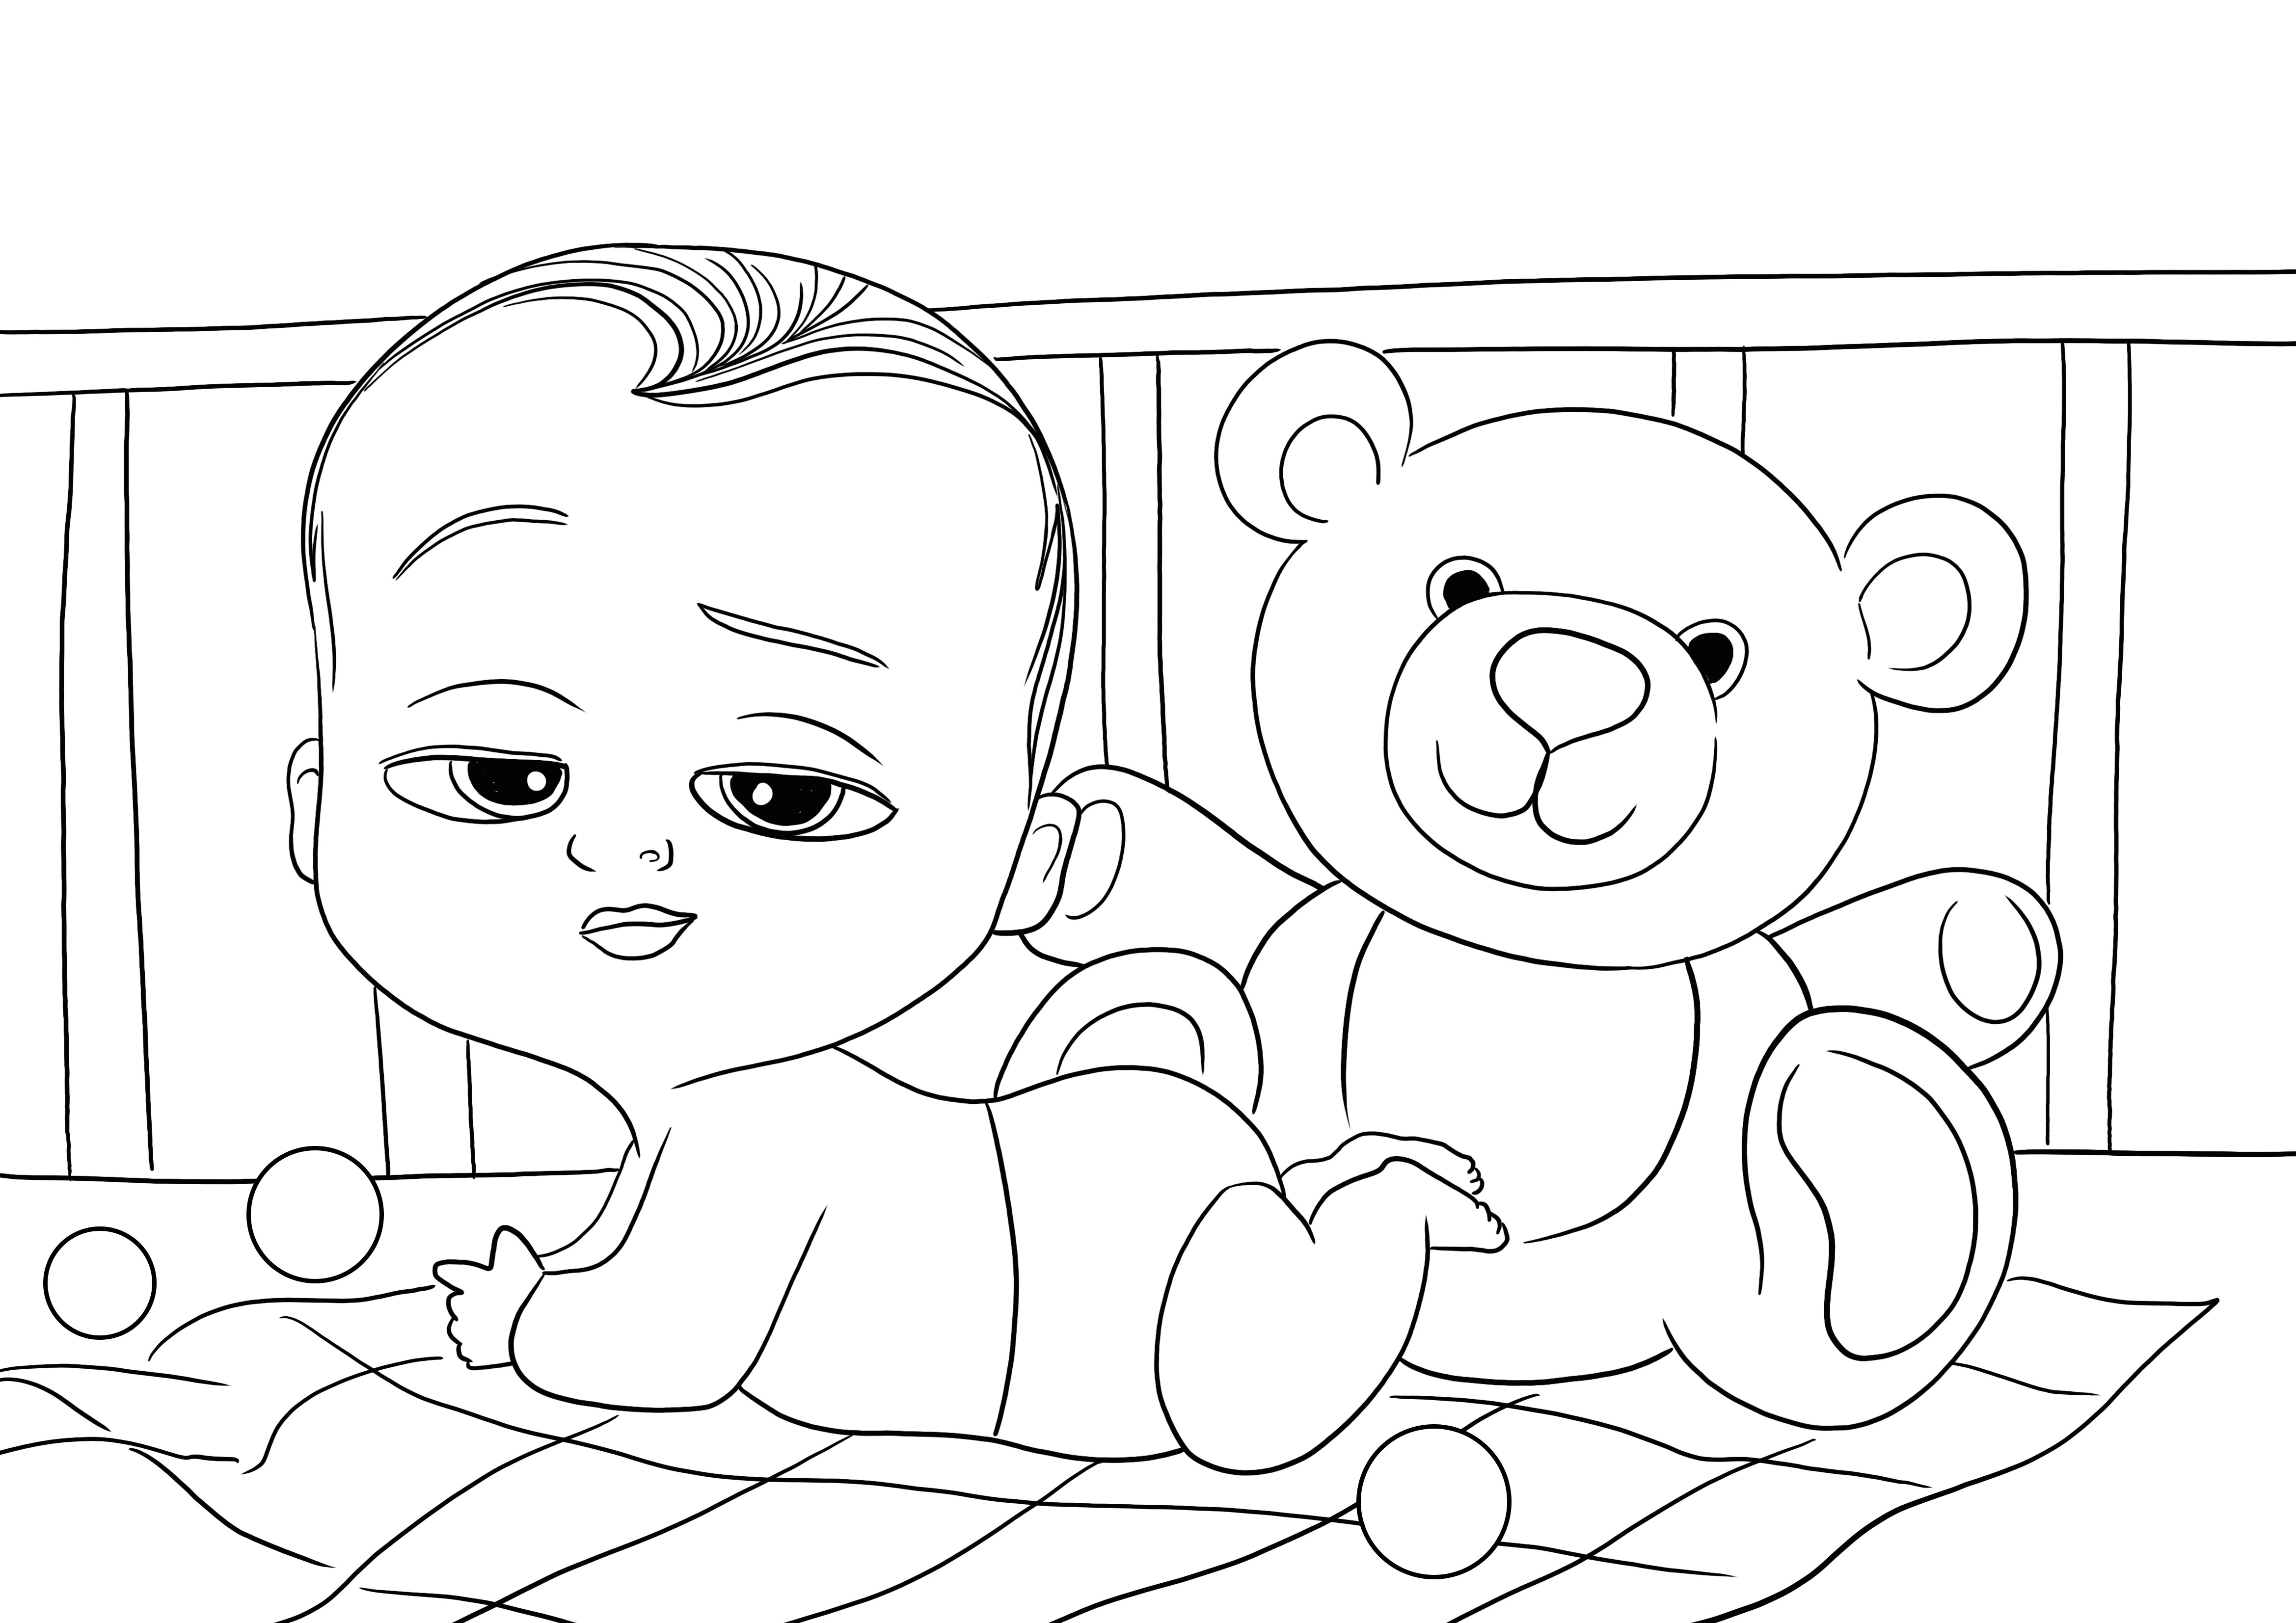 Descărcați gratuit imaginea de colorat cu Baby Boss și Teddy Bear pentru a colora